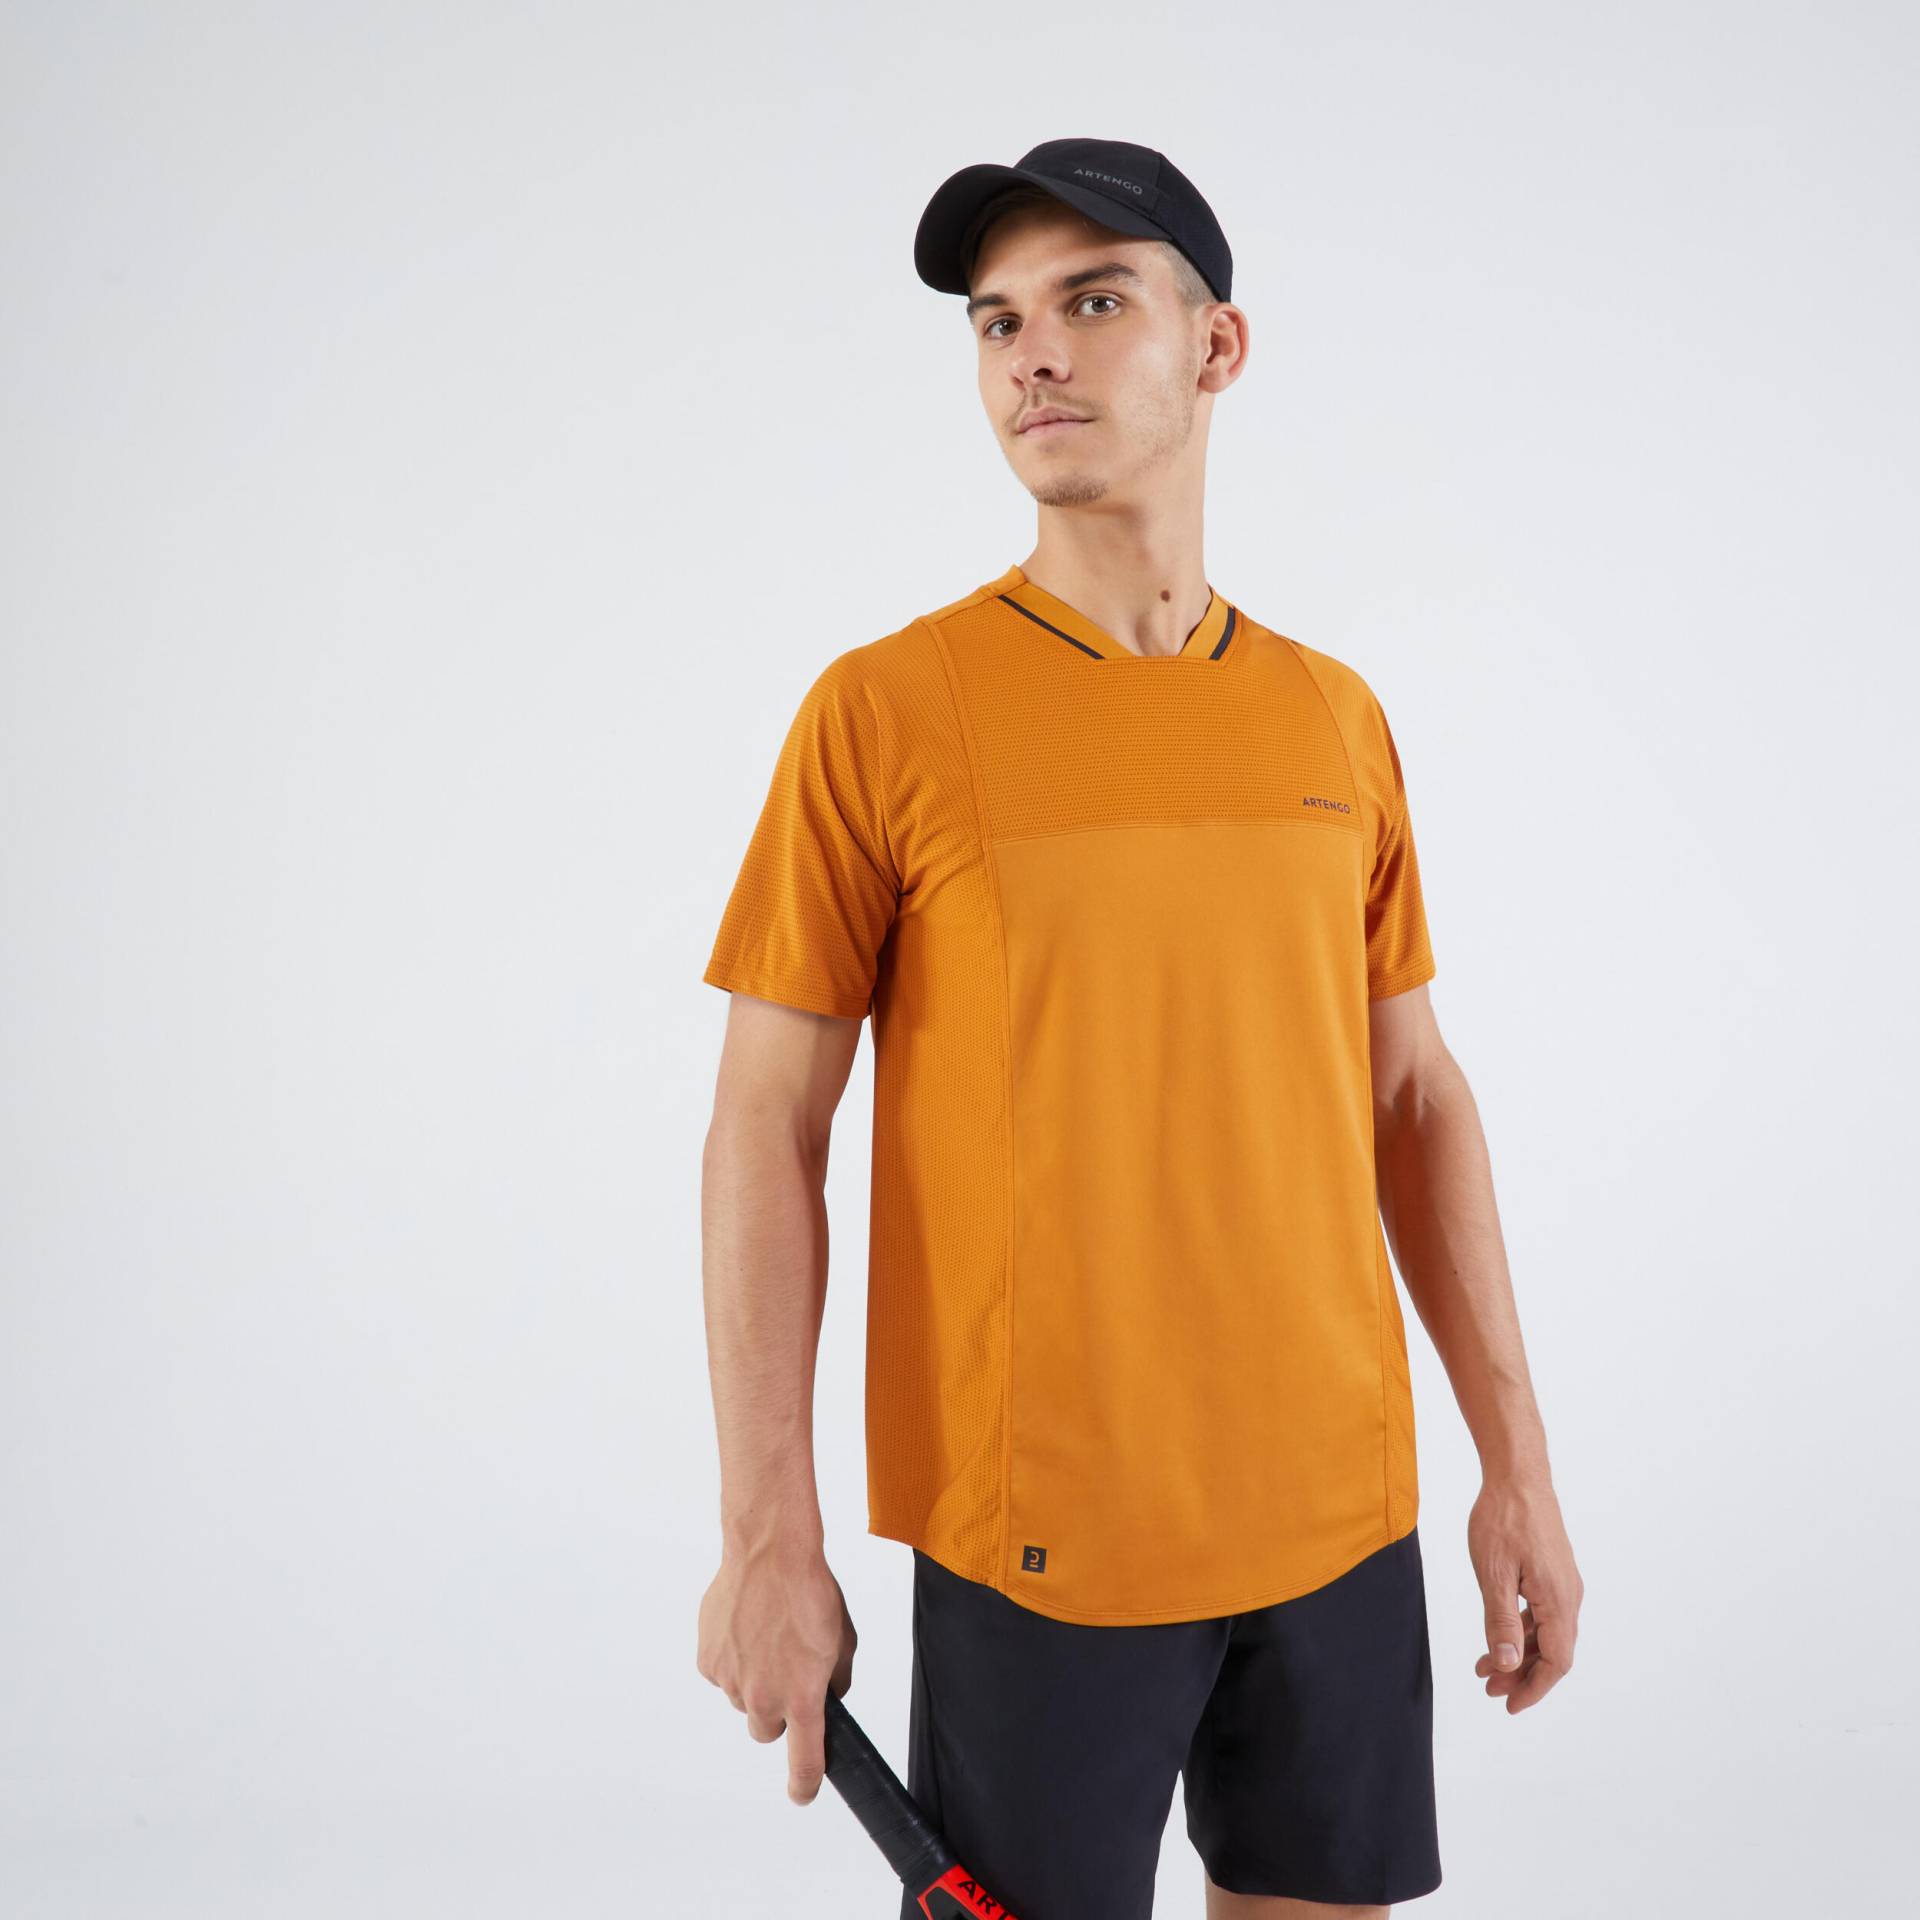 Herren Tennis T-Shirt ‒ Dry VN ocker/schwarz von ARTENGO